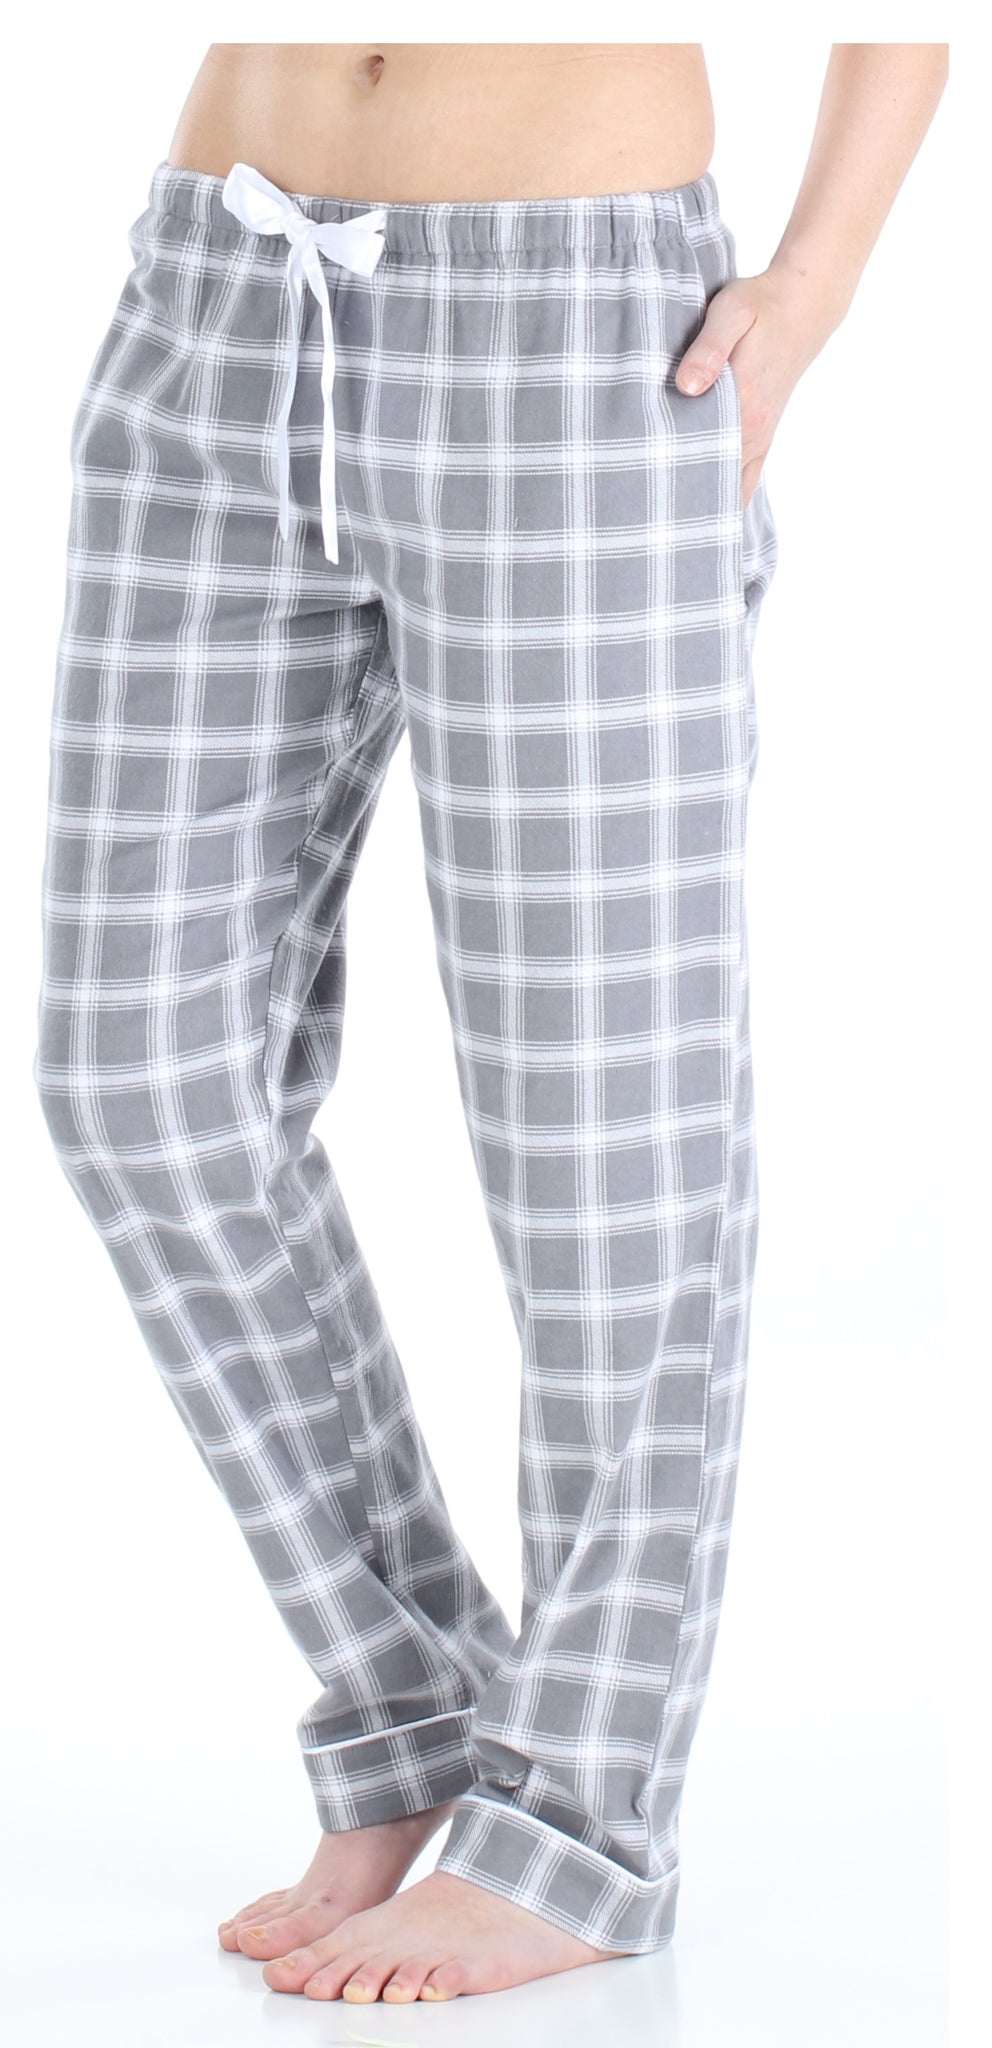 PajamaMania Women’s Cotton Flannel Pajama PJ Pants